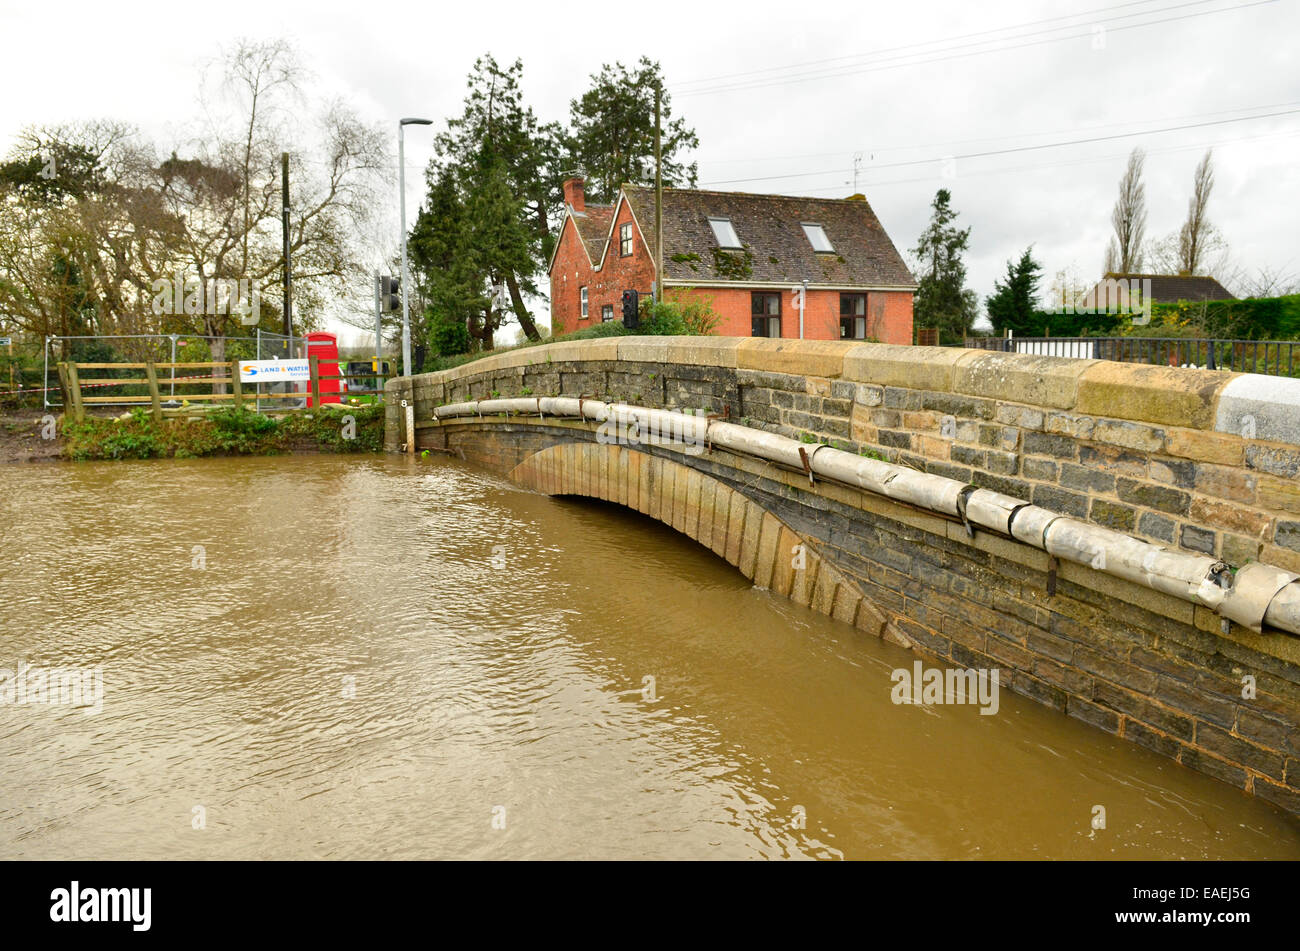 Burrowbridge, UK. 13 novembre, 2014. Météo France : inondations avec de très hauts niveaux d'eau passant sous le pont de la route principale. Crédit : Robert Timoney/Alamy Live News Banque D'Images